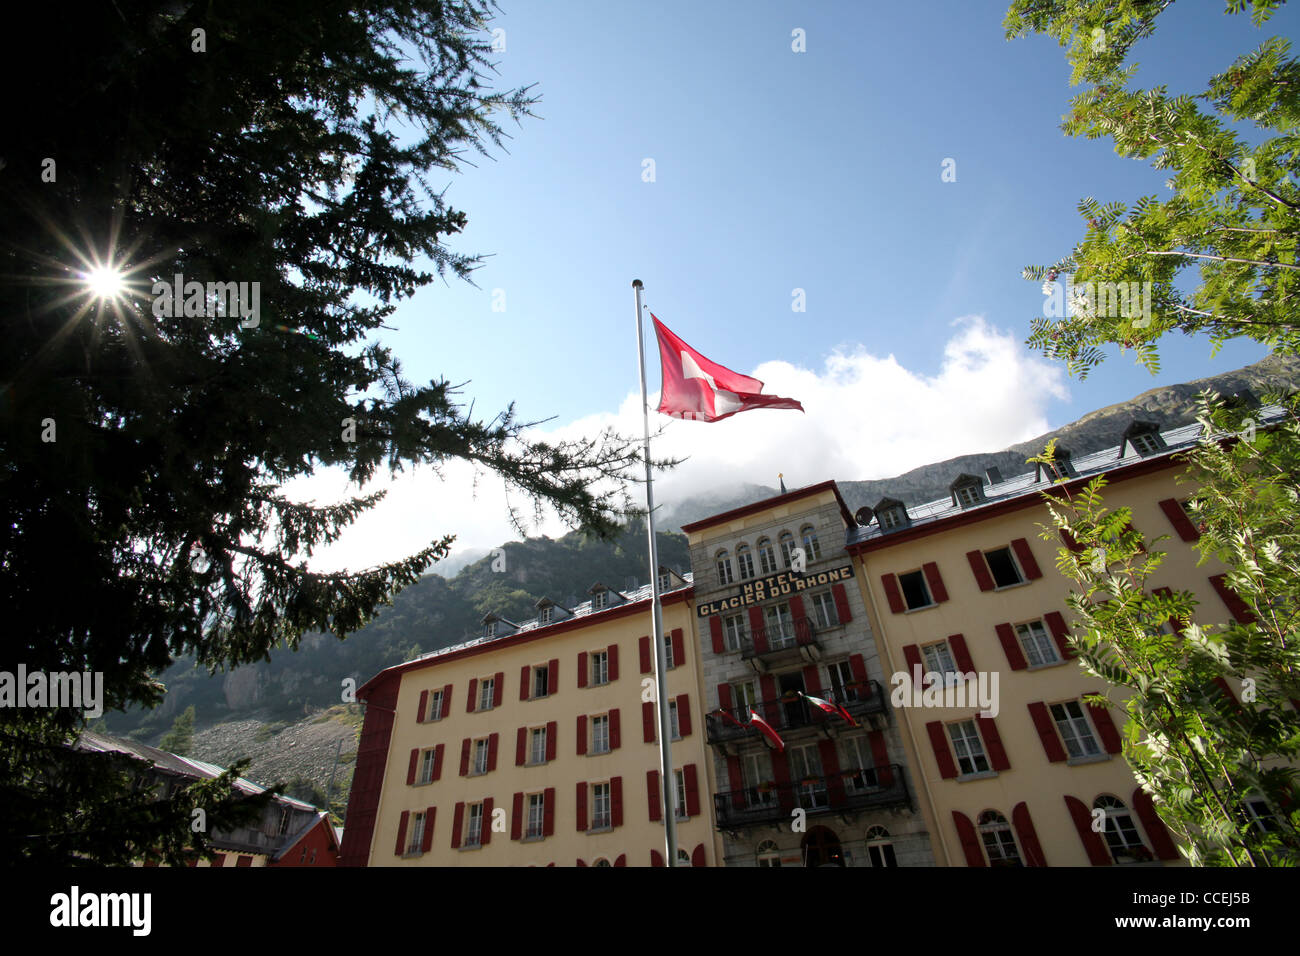 Hotel Glacier du Rhone in the alpine village of Gletsch, Furka, Valais, Alps, Switzerland, Europe Stock Photo